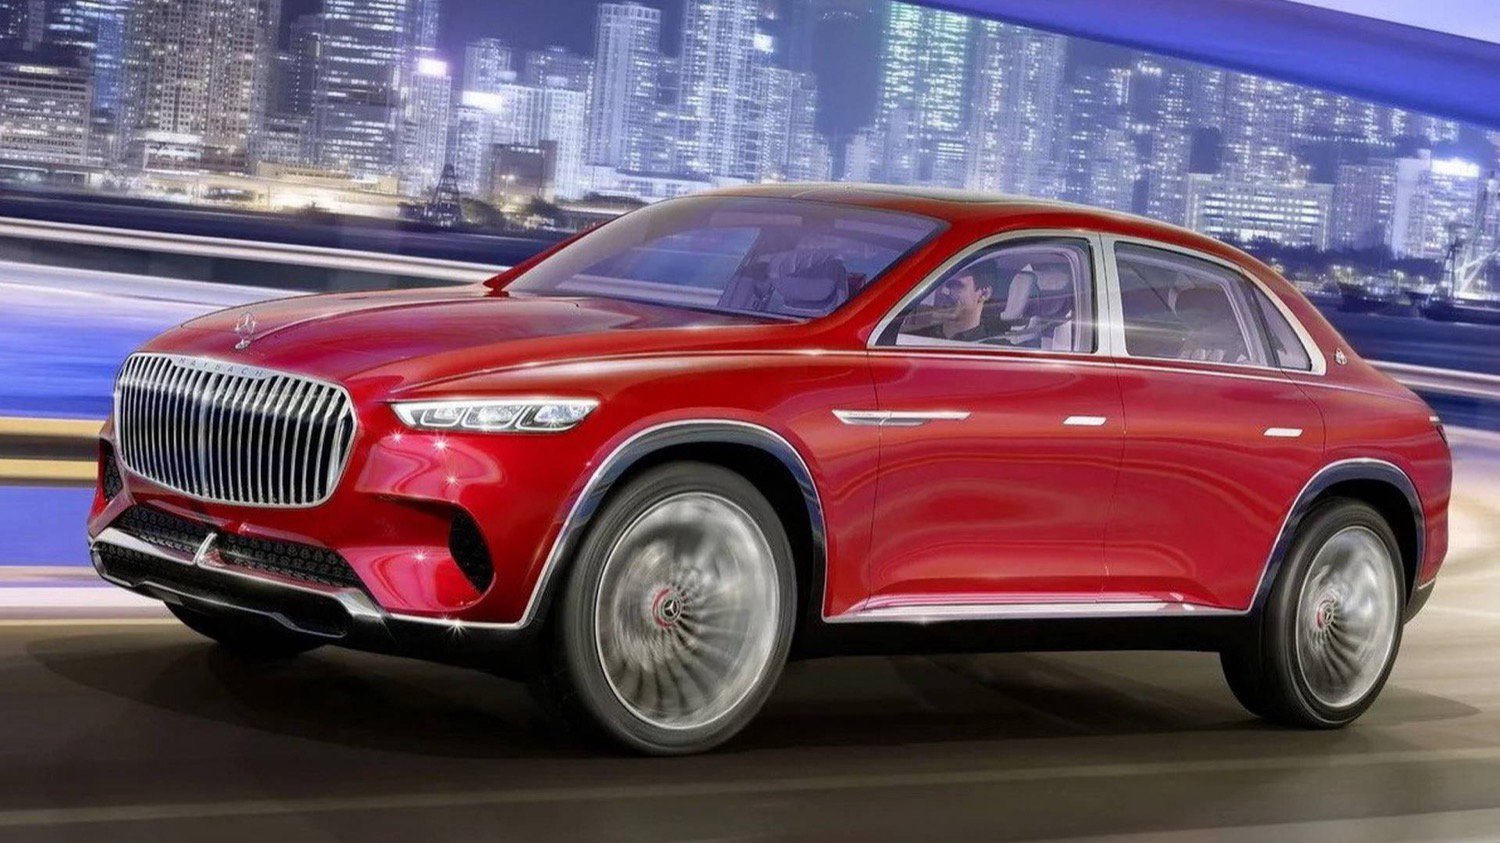 Mercedes zaprezentował koncepcyjny model luksusowego elektrycznego Maybach